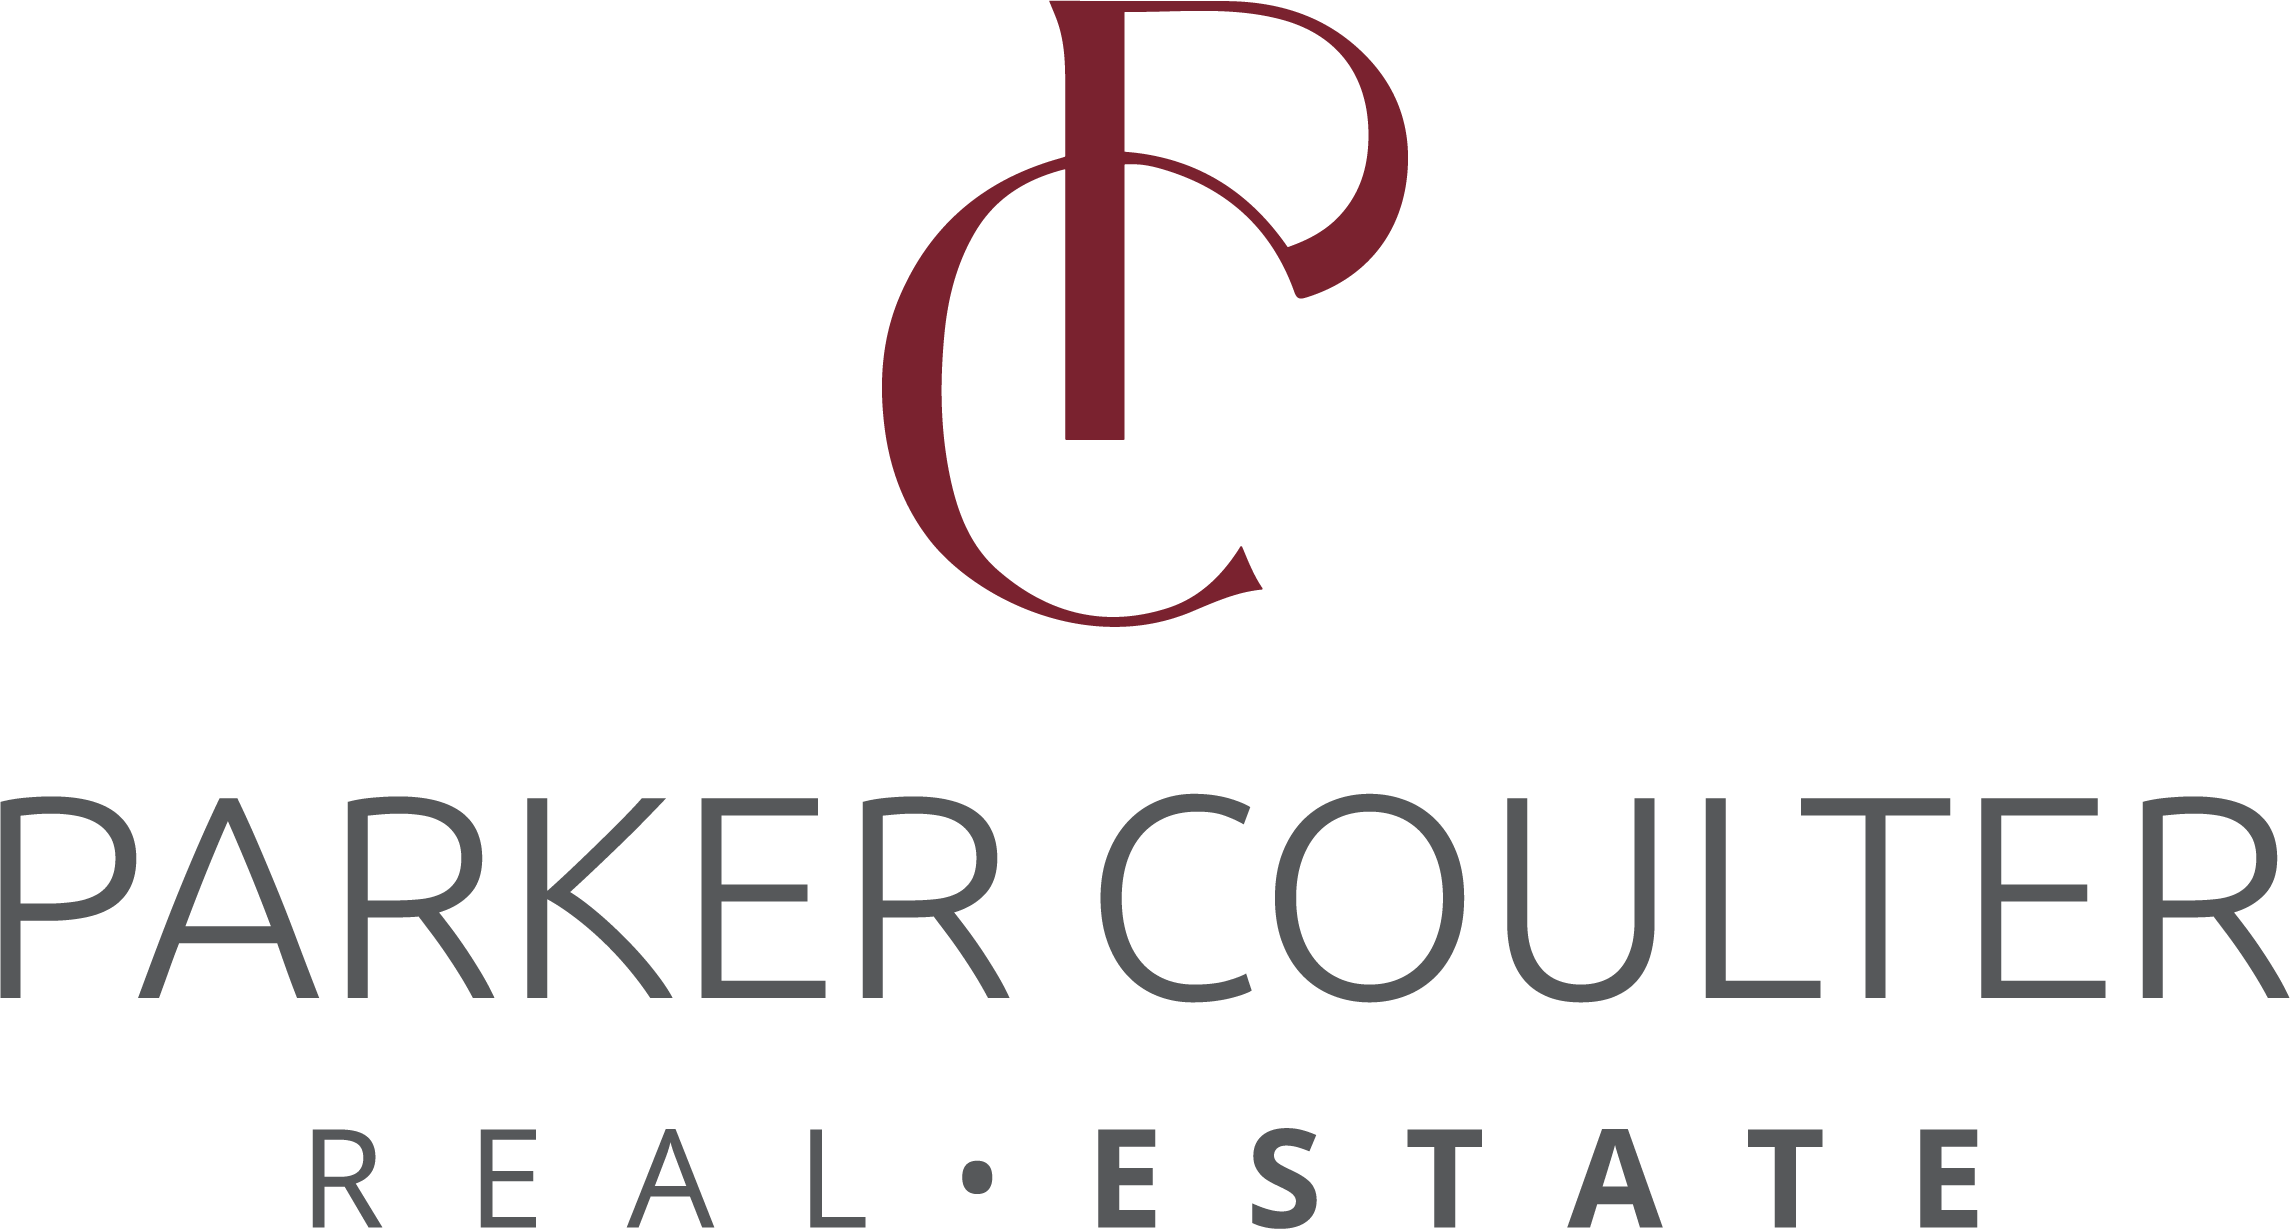 Parker Coulter real estate logo